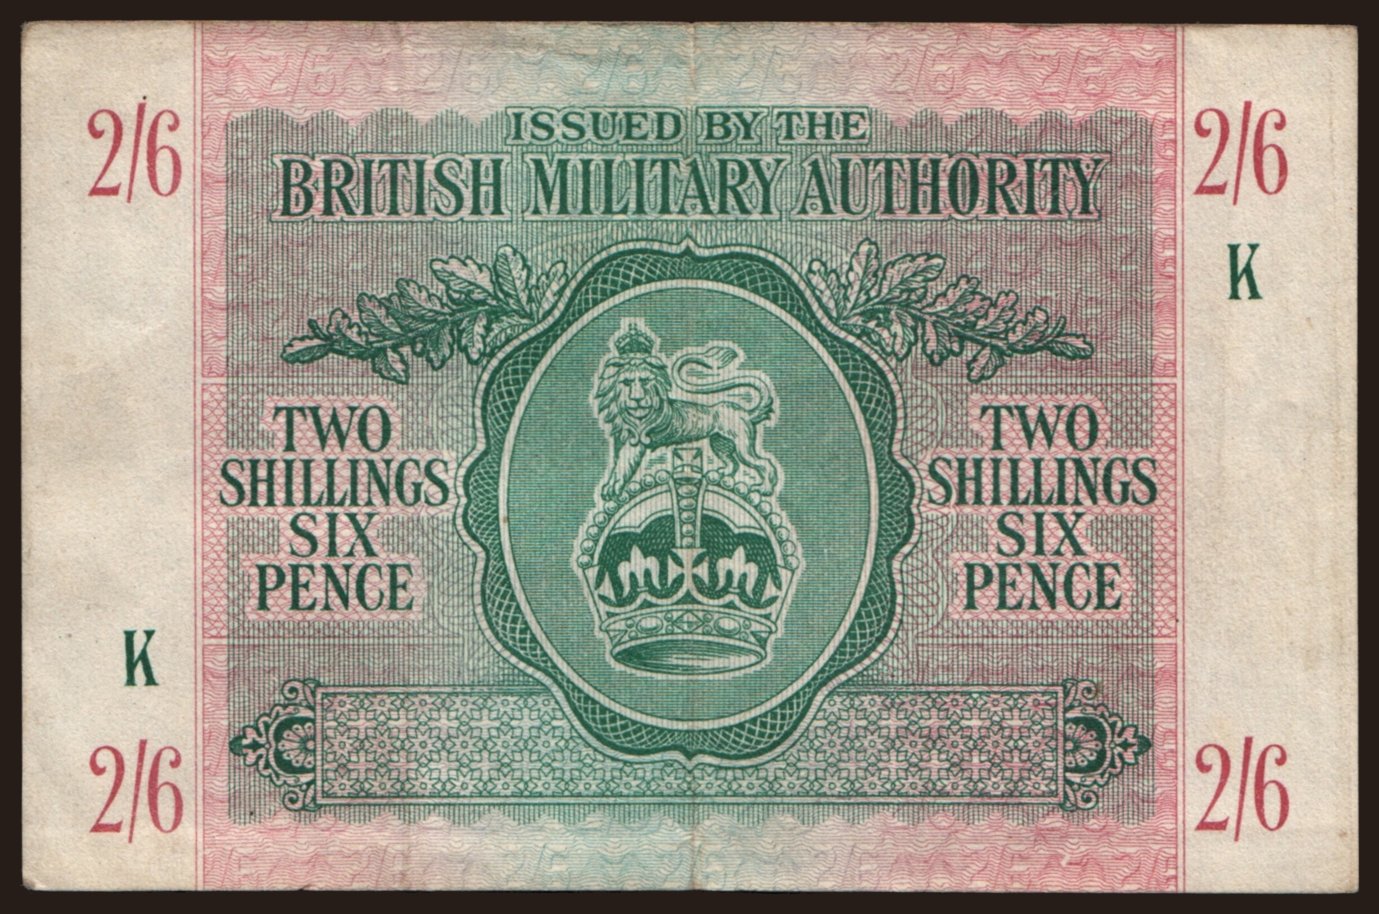 BMA, 2 shillings 6 pence, 1943